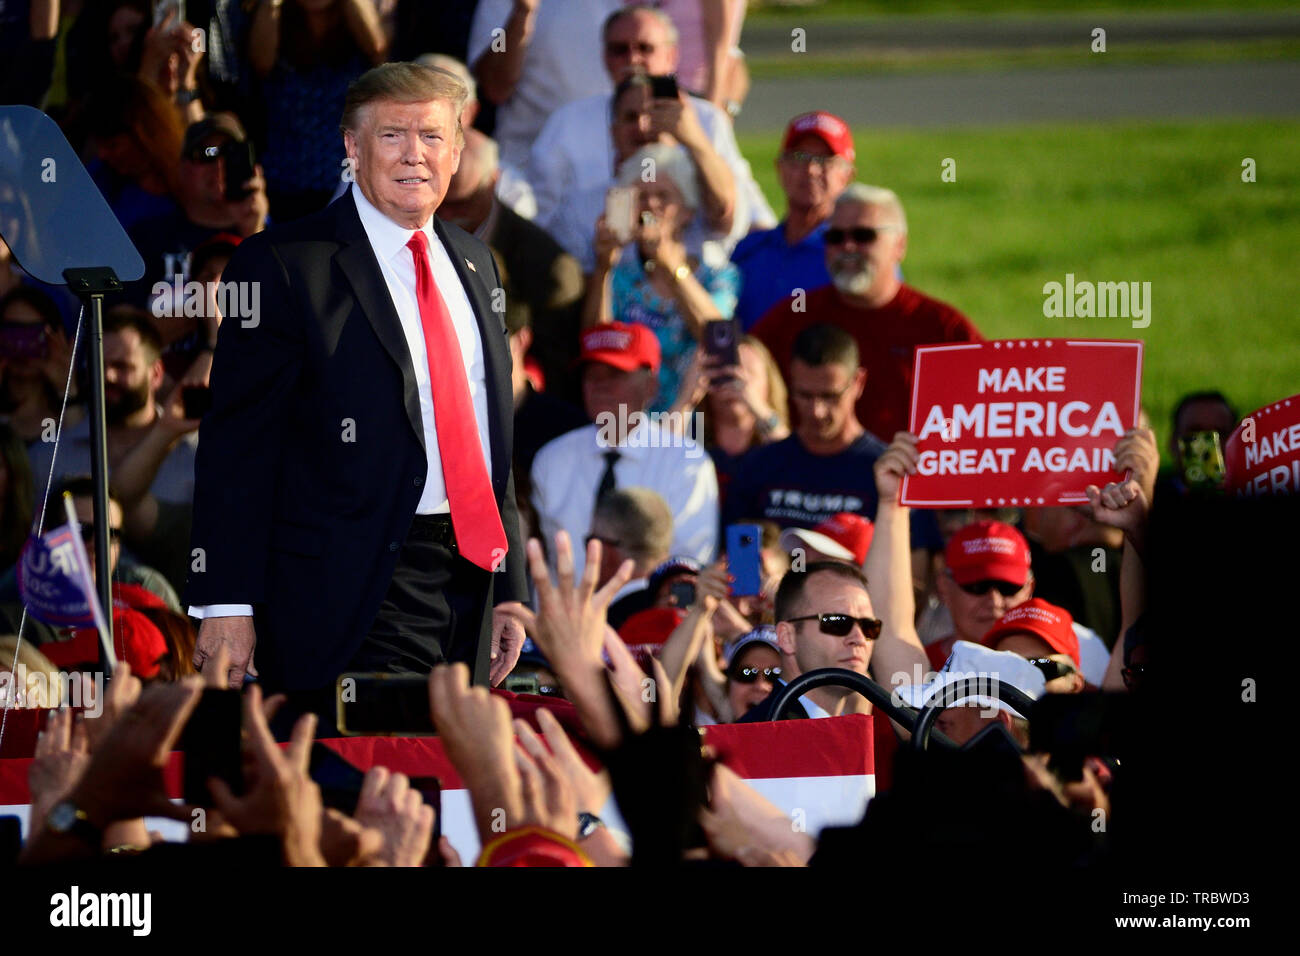 US-Präsident Donald J. Trumpf grüßt Unterstützer, als er deplanes eine Boeing C-32 Air Force One vor einer maga Rallye in Montoursville, PA am 20. Mai. Stockfoto